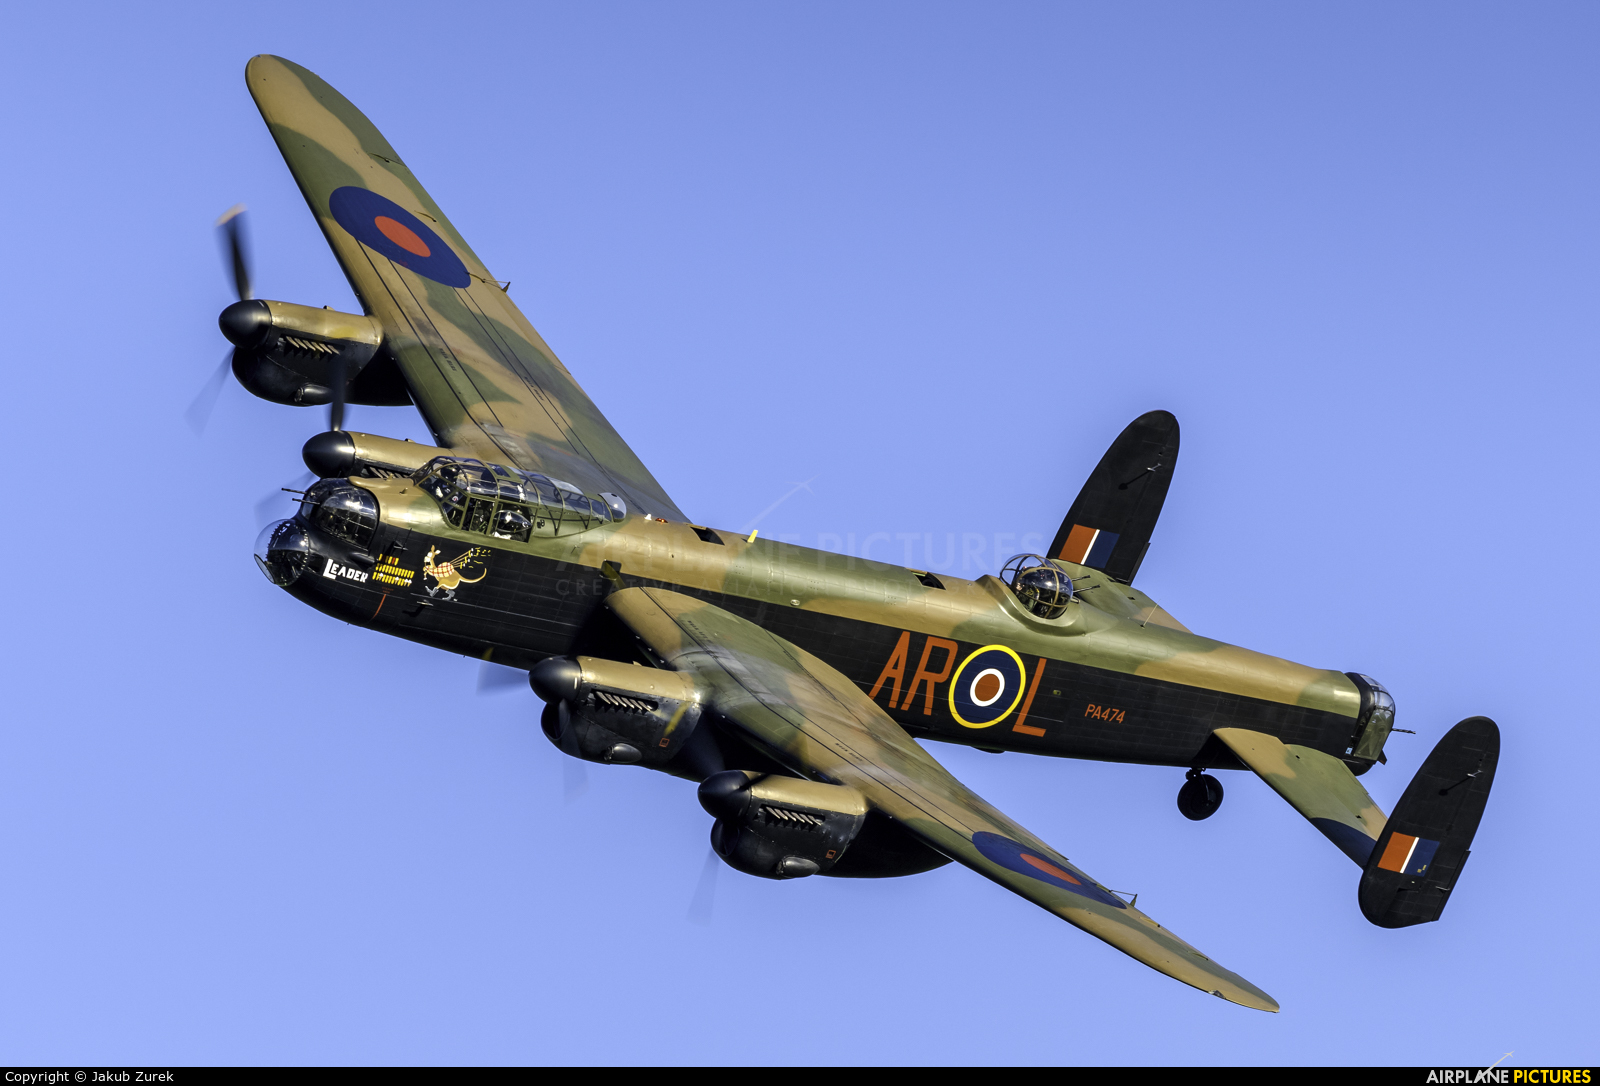 Royal Air Force "Battle of Britain Memorial Flight" PA474 aircraft at Old Warden